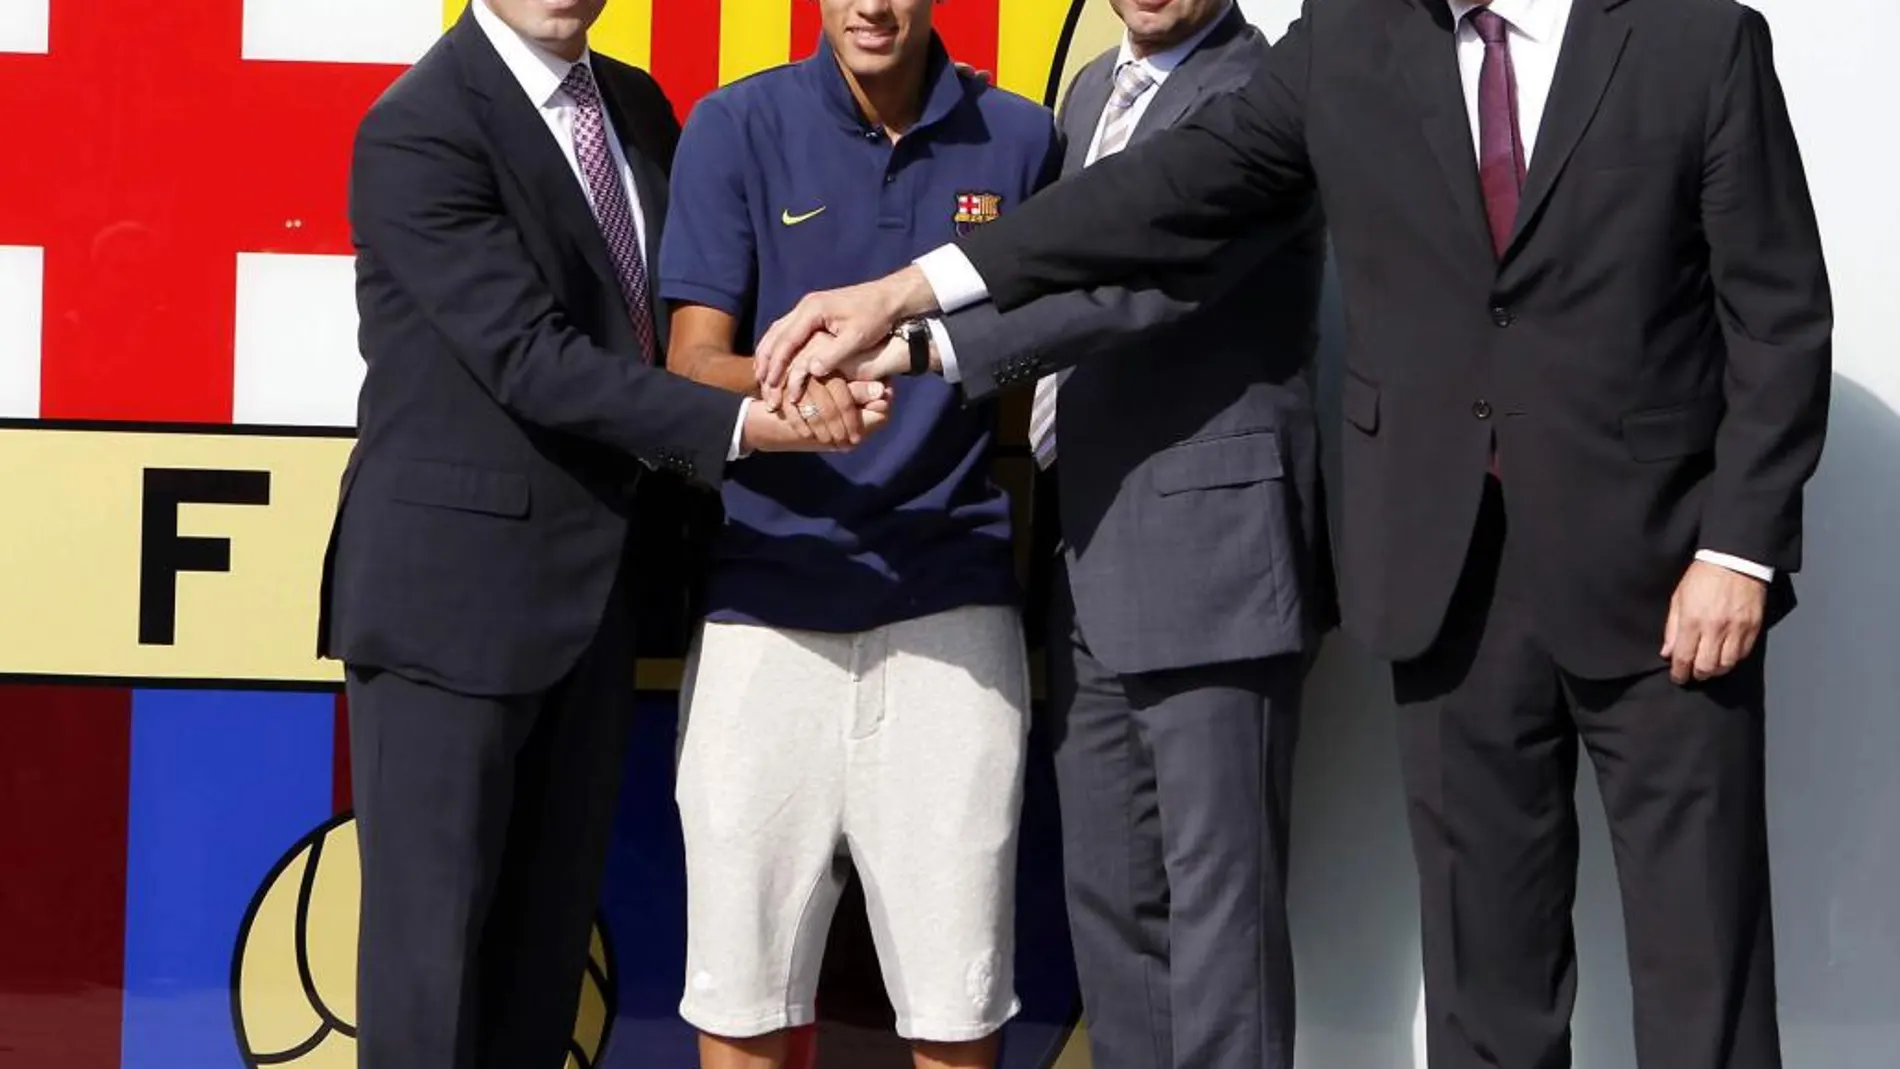 El presidente del FC Barcelona, Sandro Rosell; el jugador brasileño Neymar da Silva; el vicepresidente deportivo, Josep María Bertomeu